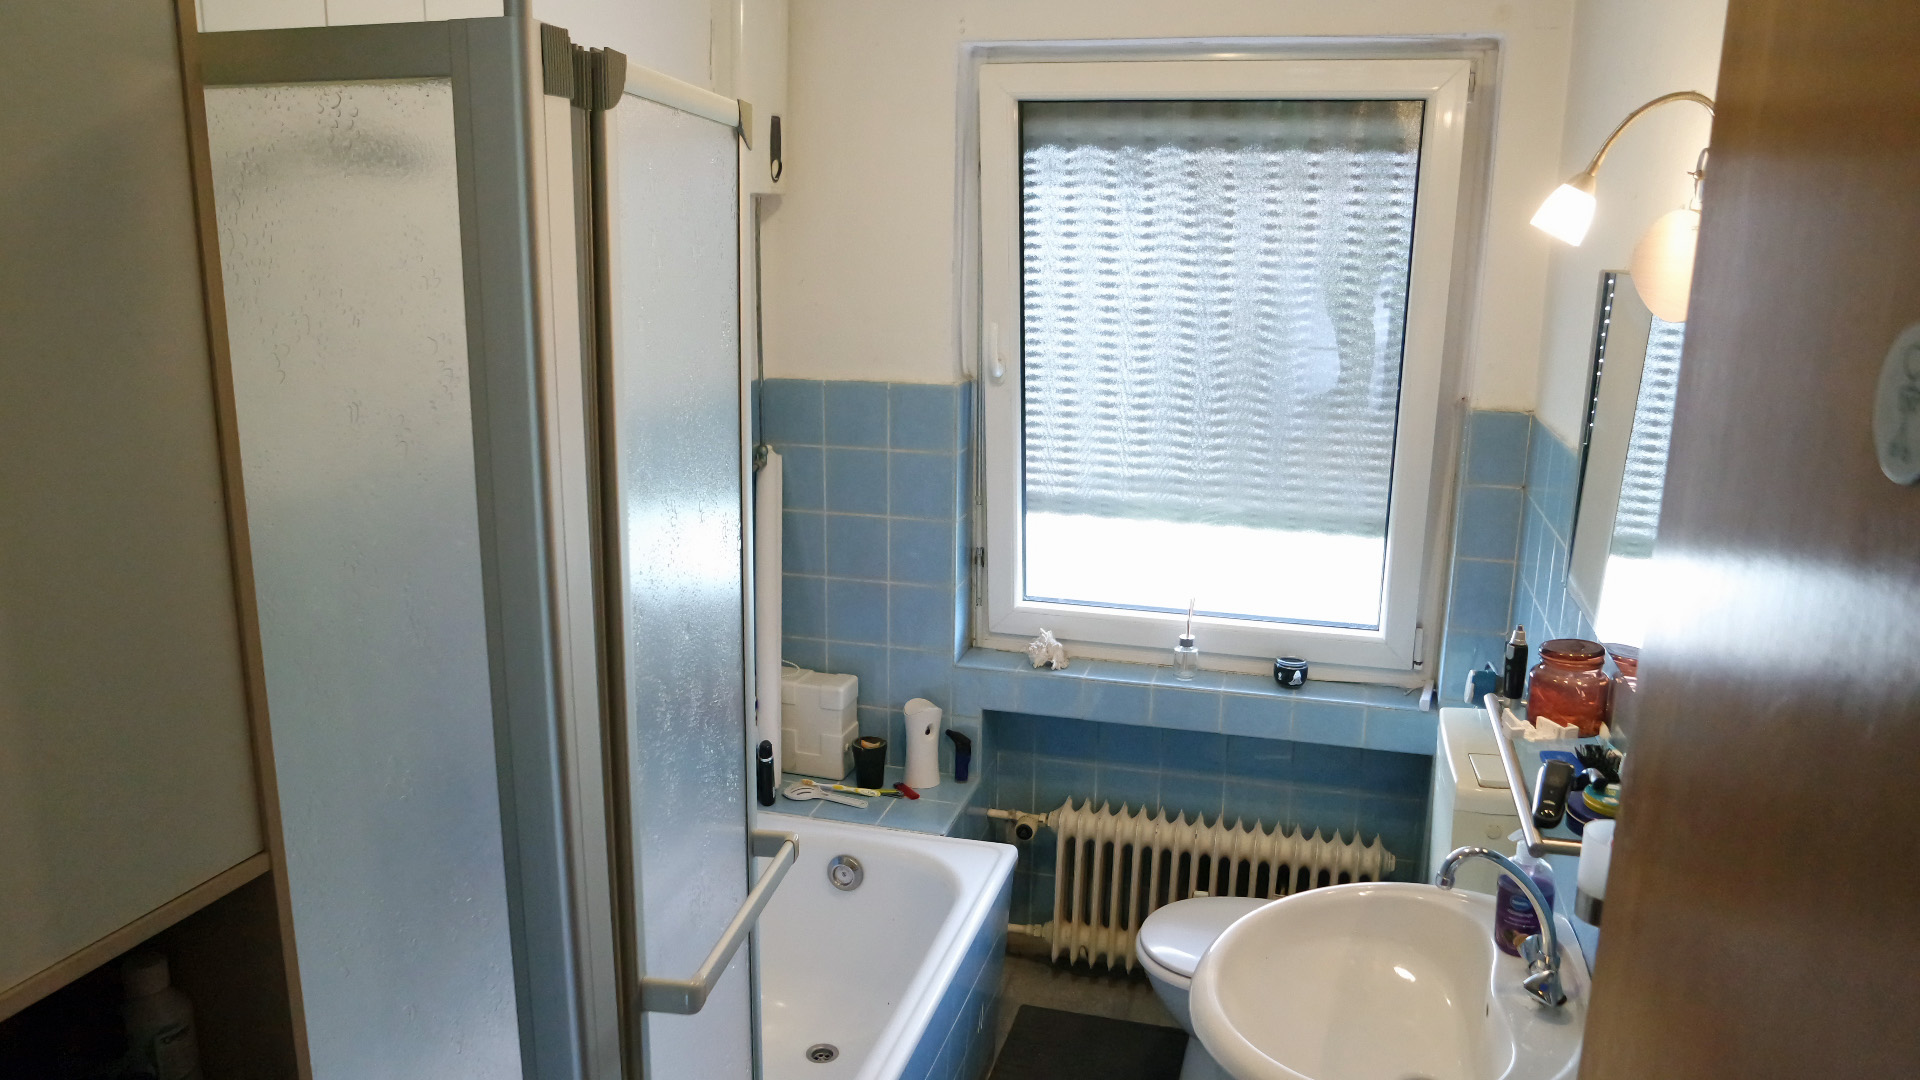 Betzdorf: Zweifamilienhaus in guter, zentraler Wohnlage, ...Bad. Fenster wurden alle erneuert